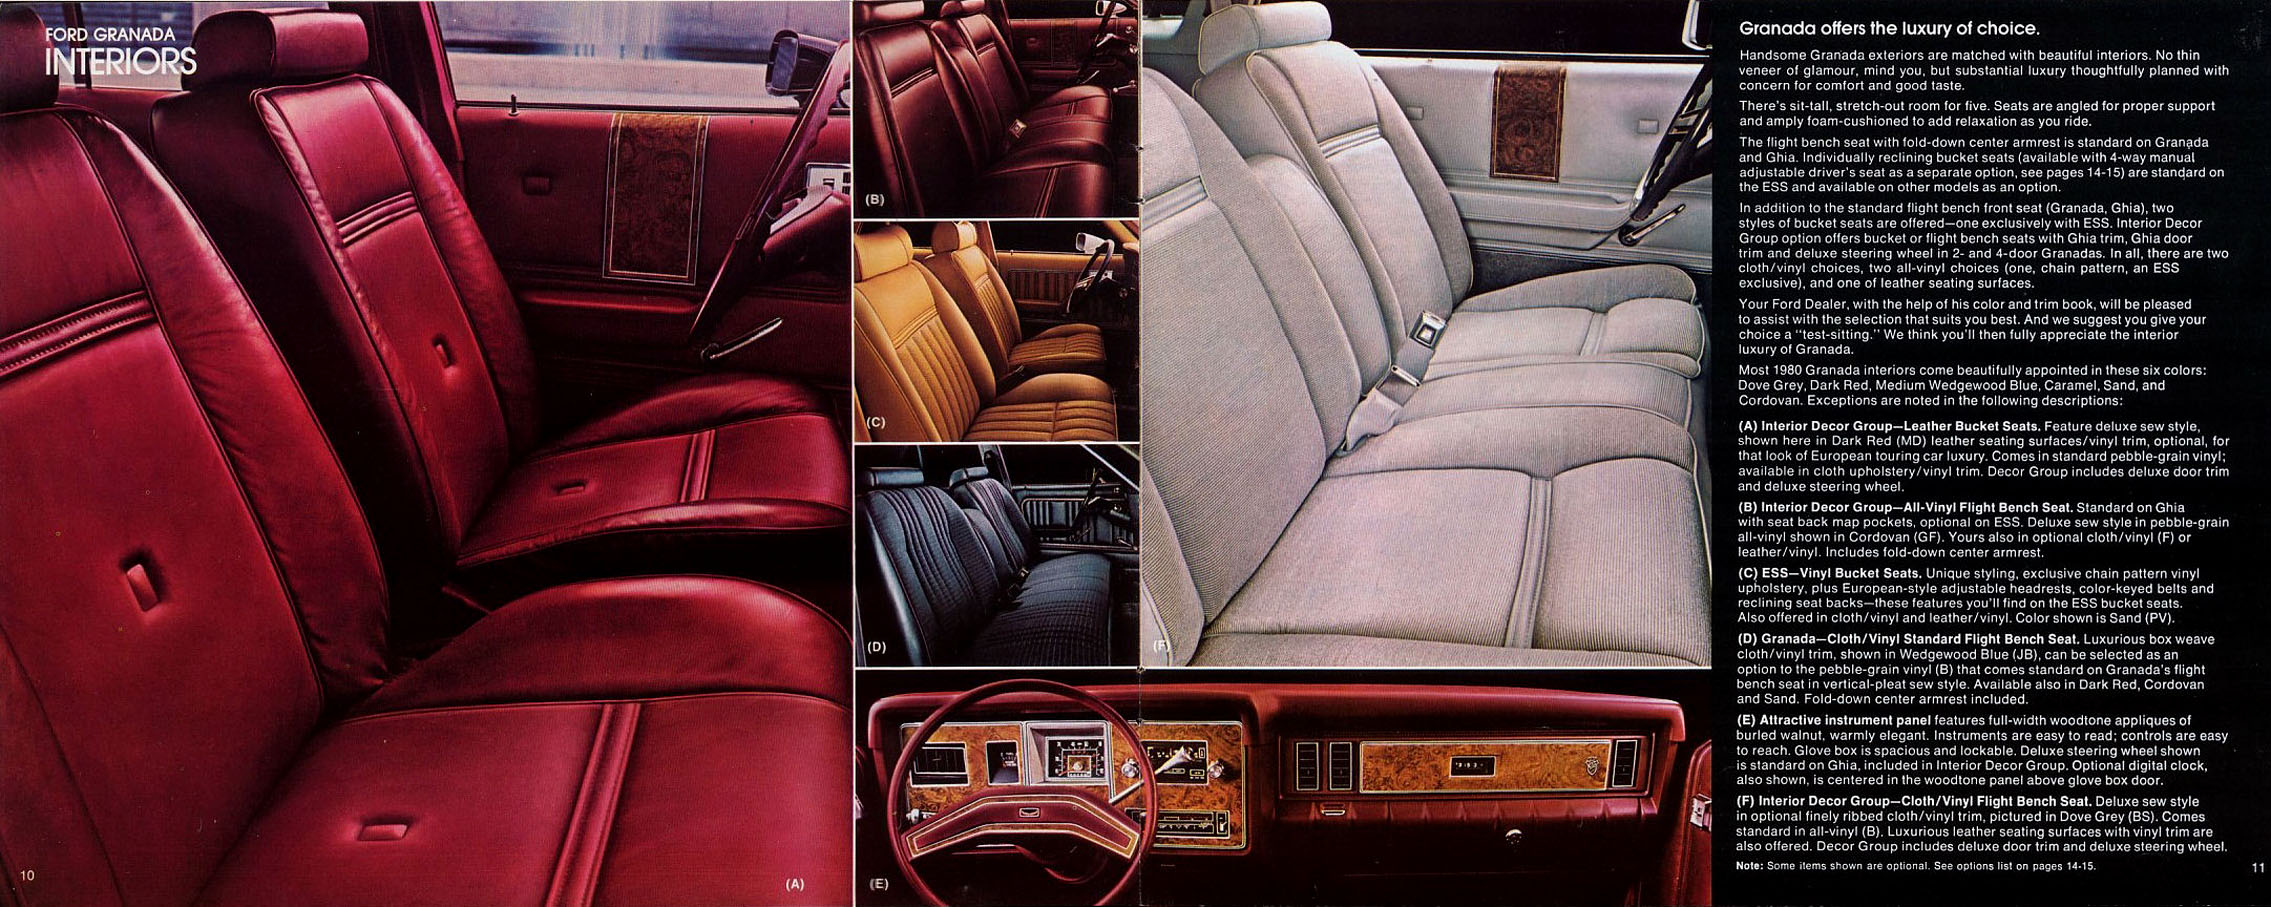 1980 Ford Granada-10-11